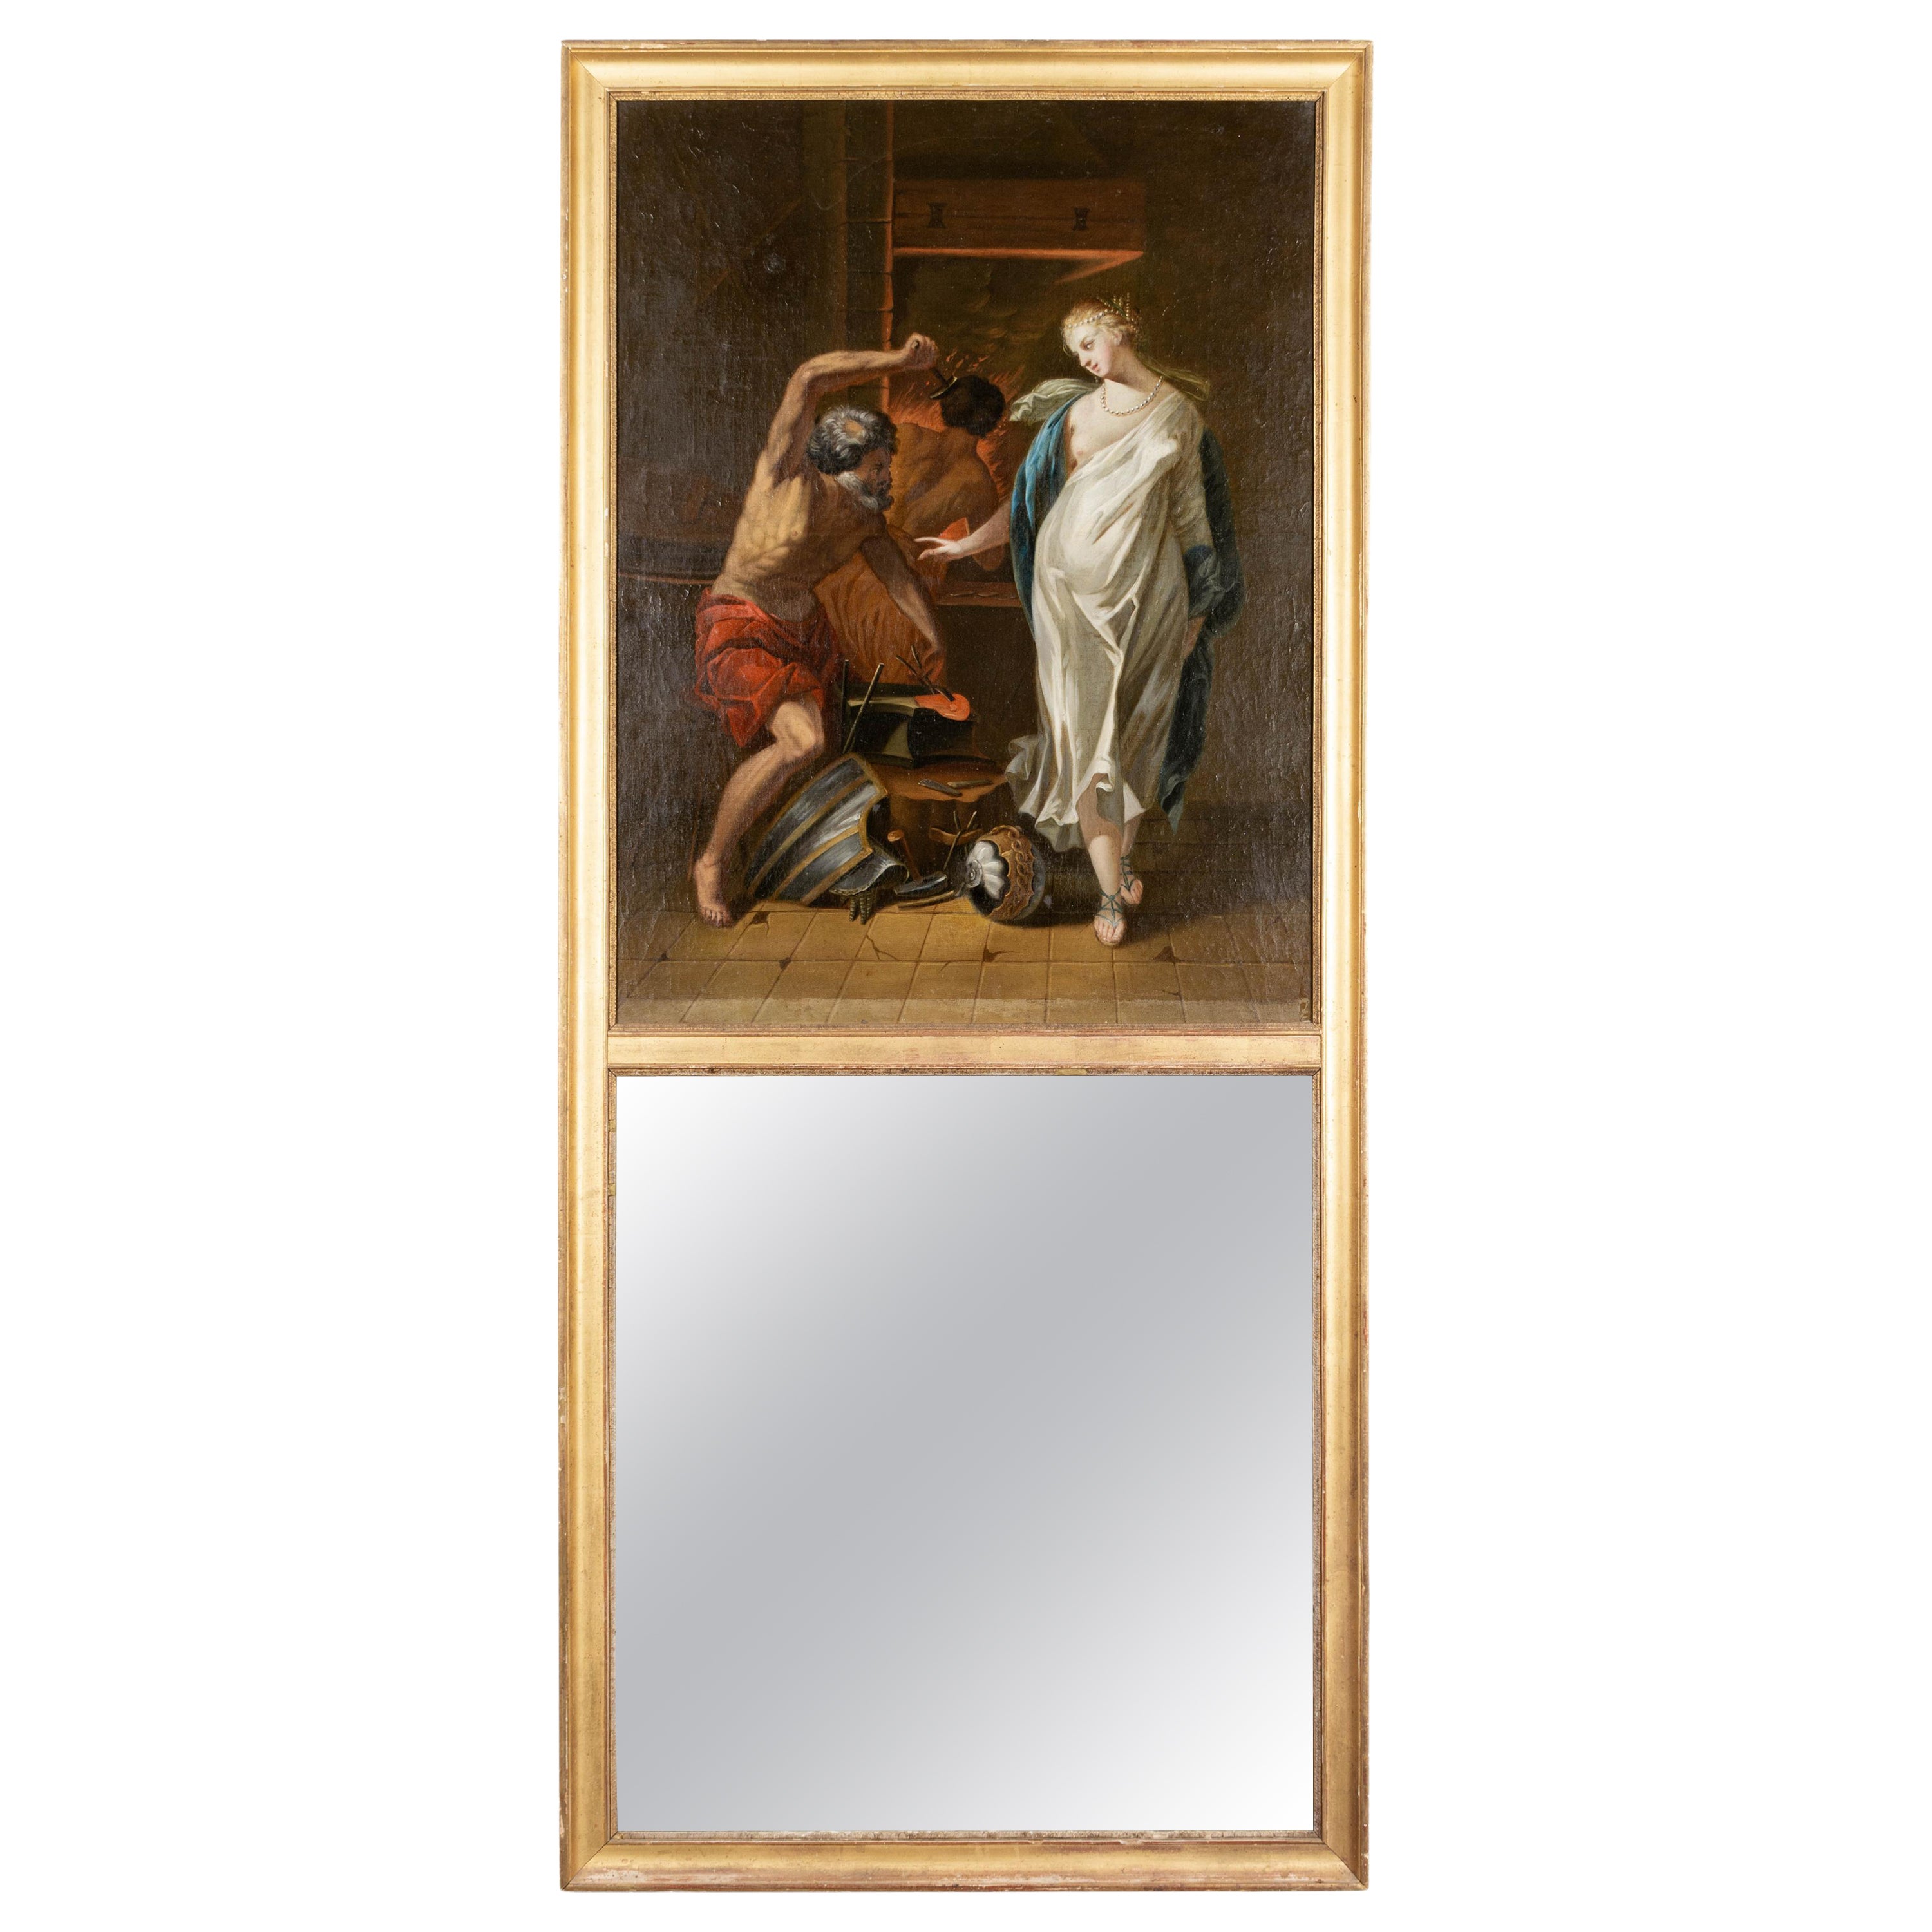 Miroir Trumeau français du 18ème siècle avec peinture de mythe grecque